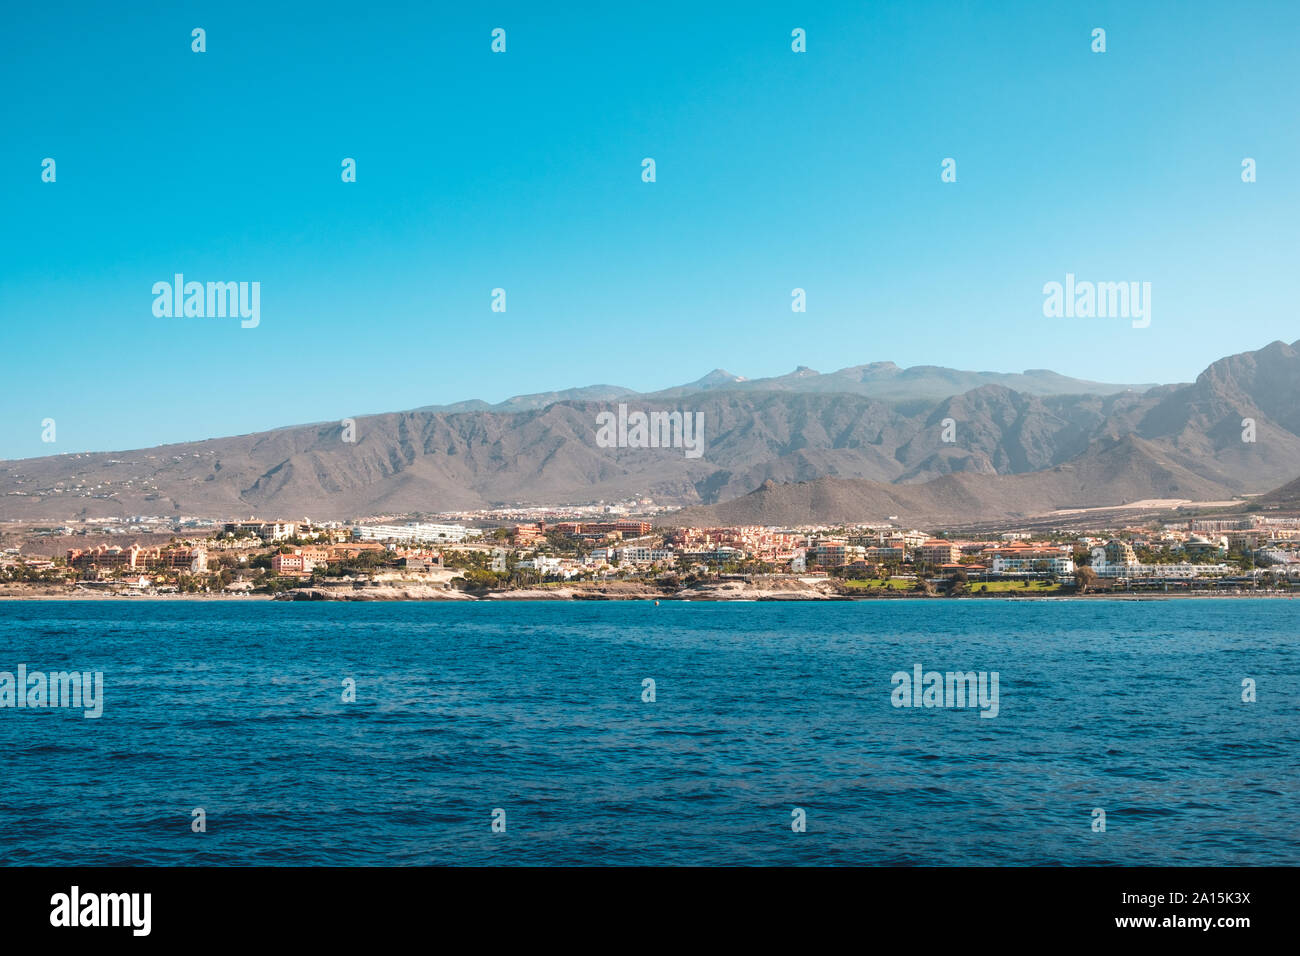 Stadt und Hotels an der Küste mit Blick auf die Berge Landschaft Hintergrund - ocean view auf Teneriffa Stockfoto